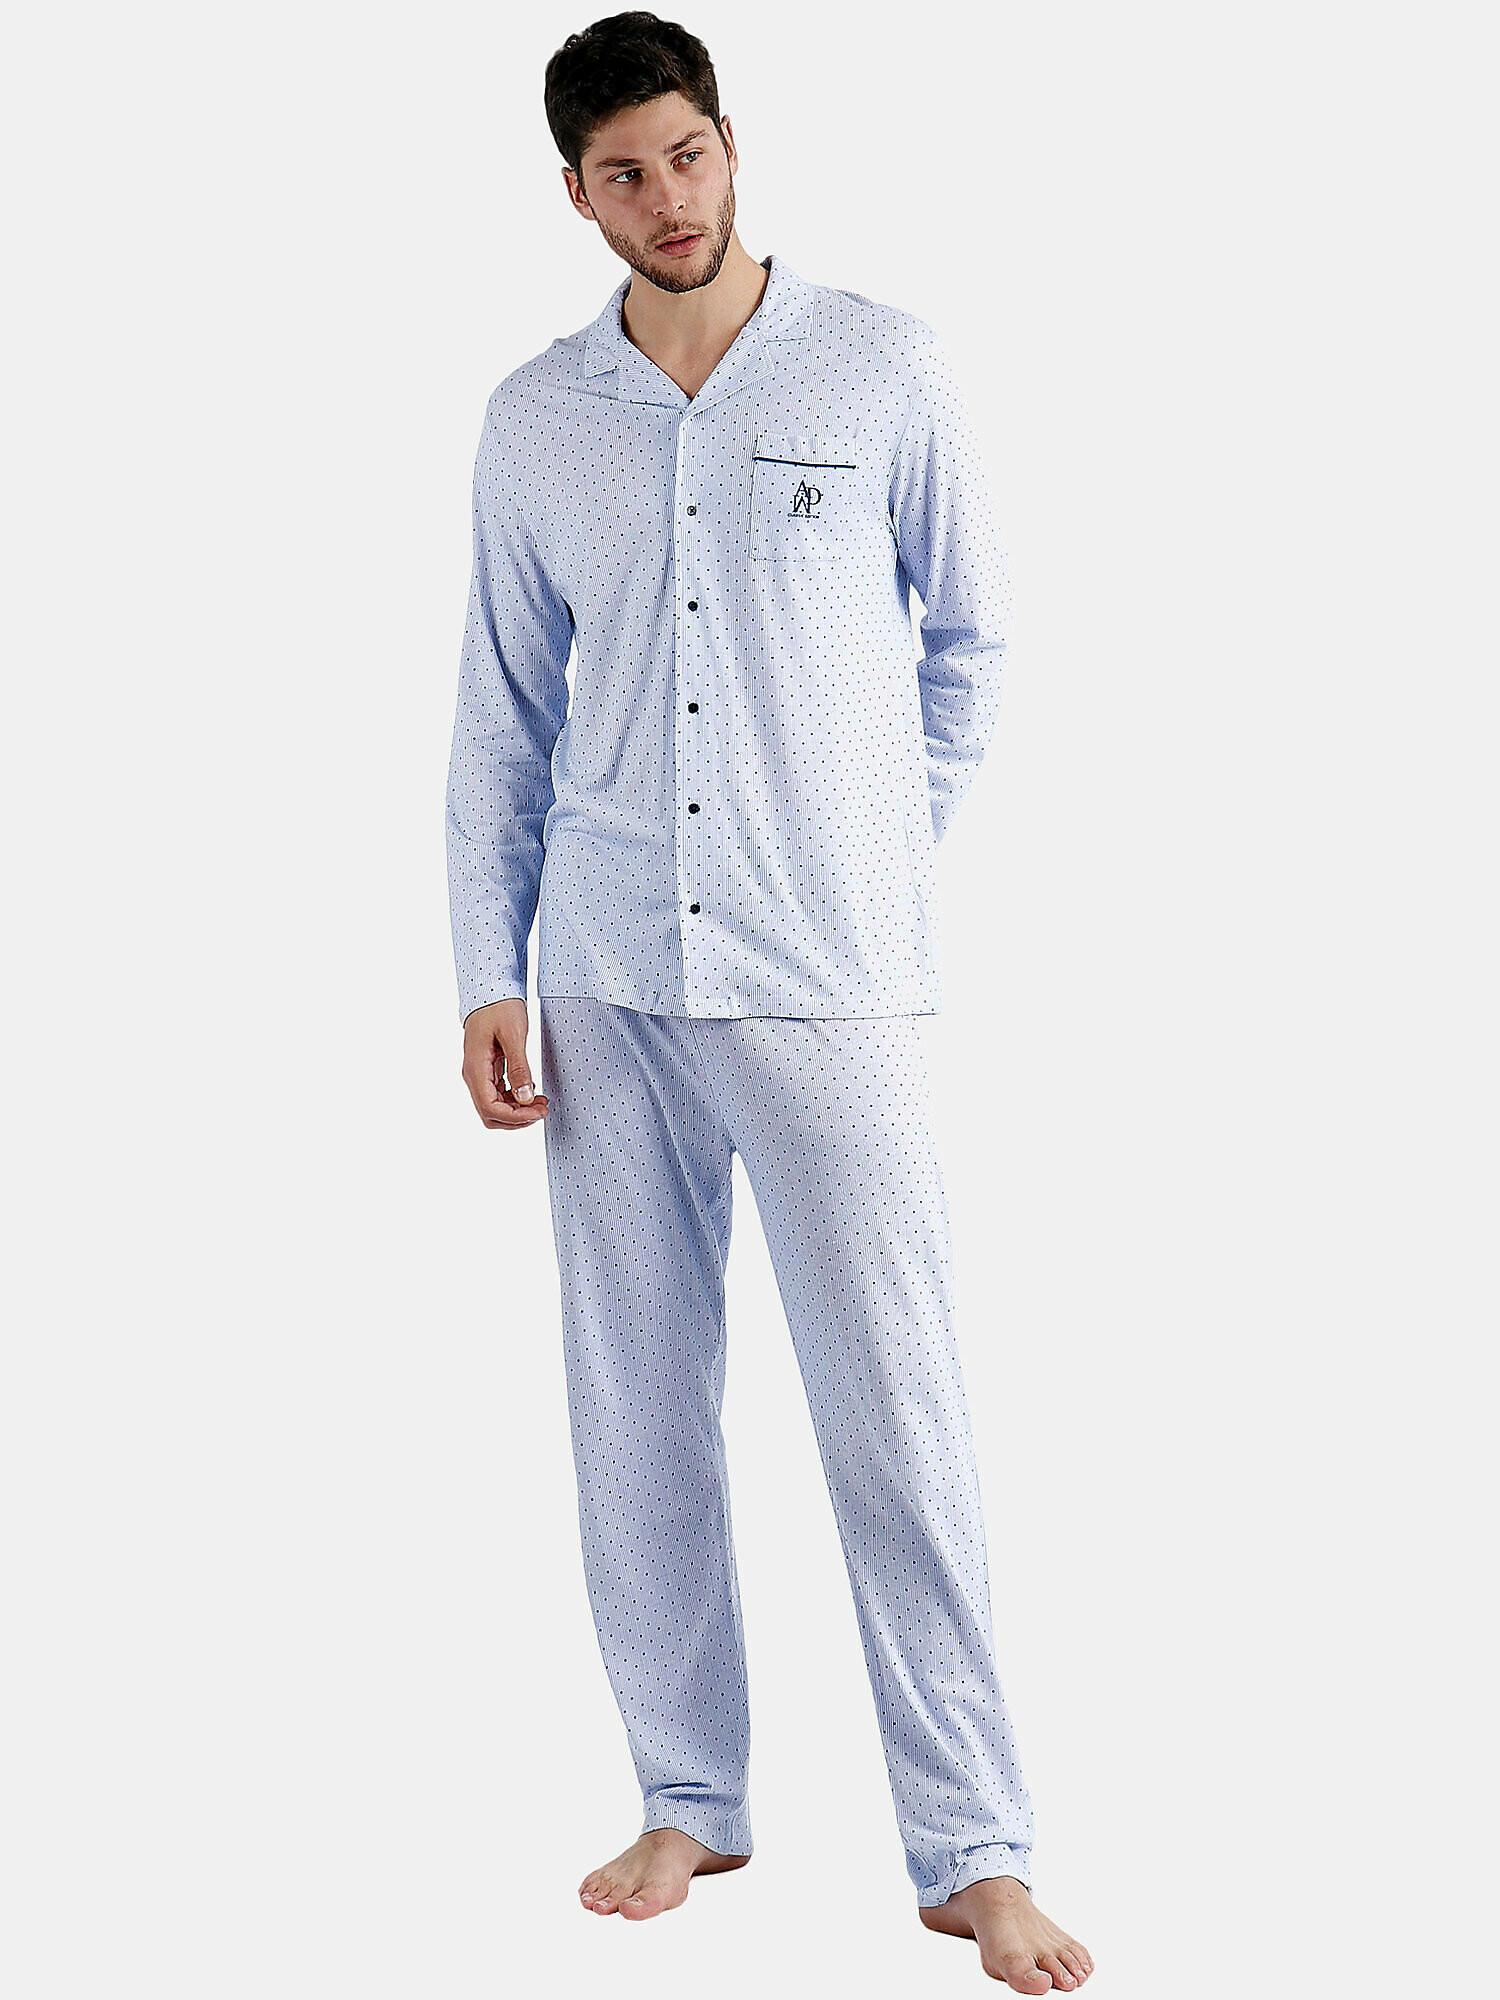 Pyjama Hausanzug Hose Und Hemd Stripes And Dots Herren Blau XL von Admas